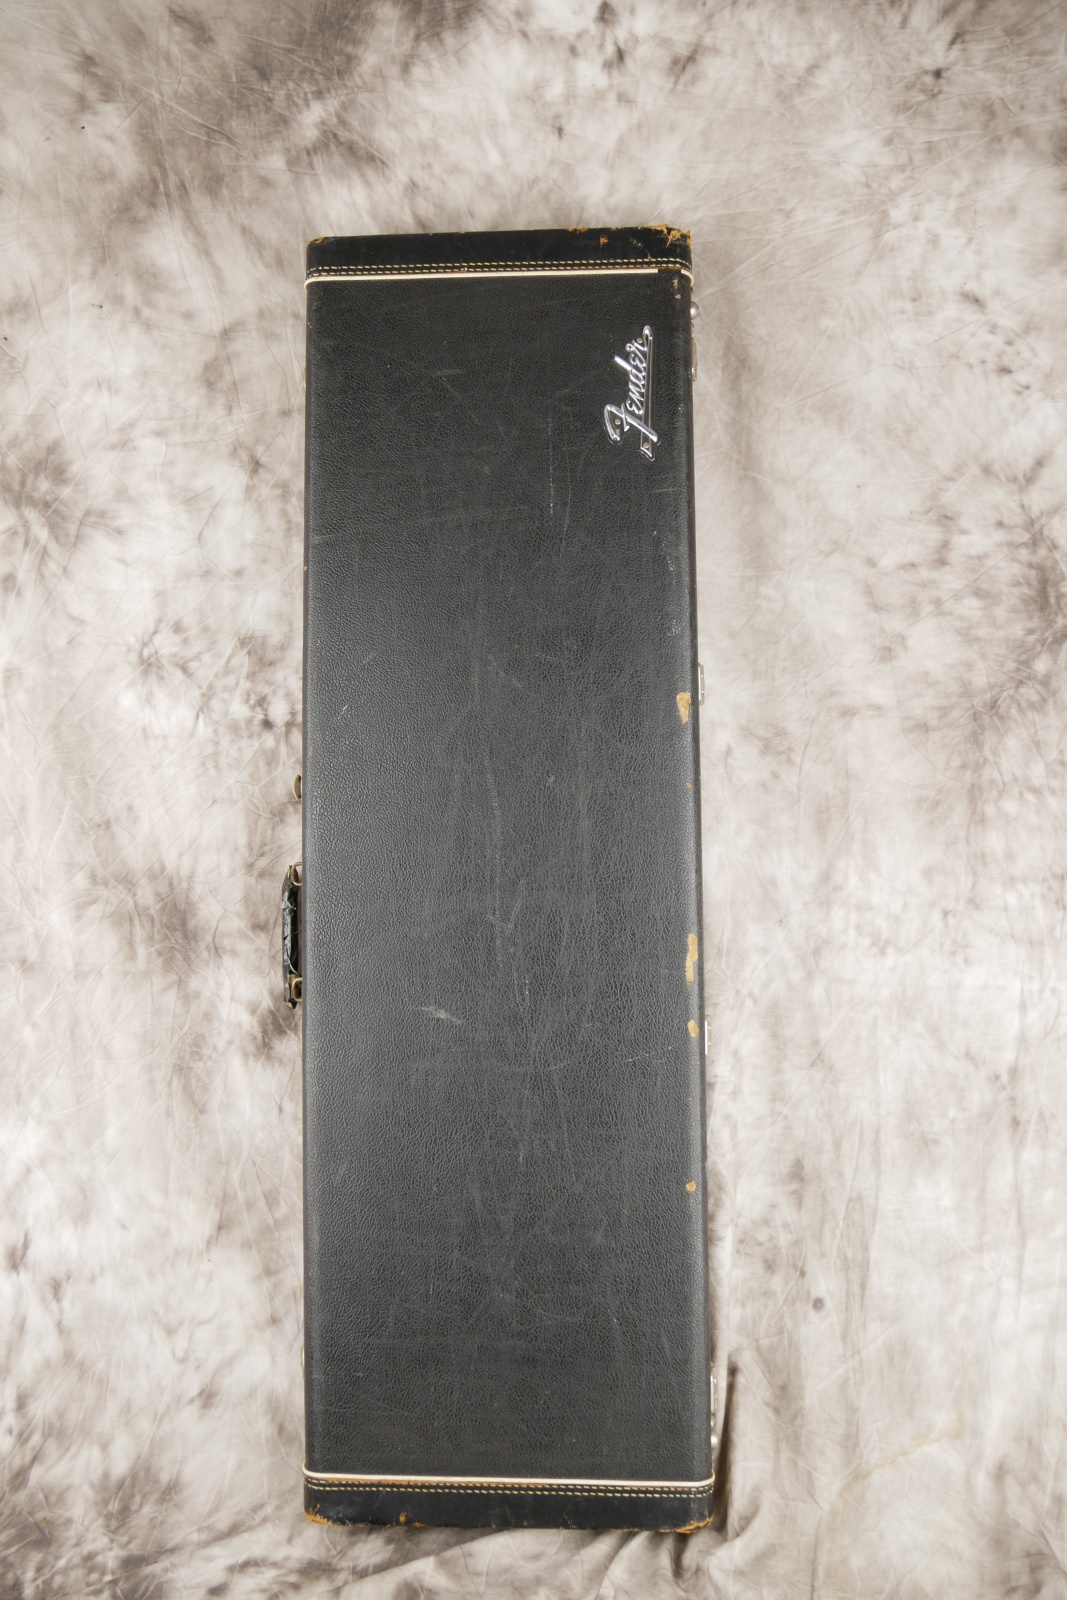 Fender-Precision-Bass-1966-olympic-white-012.JPG